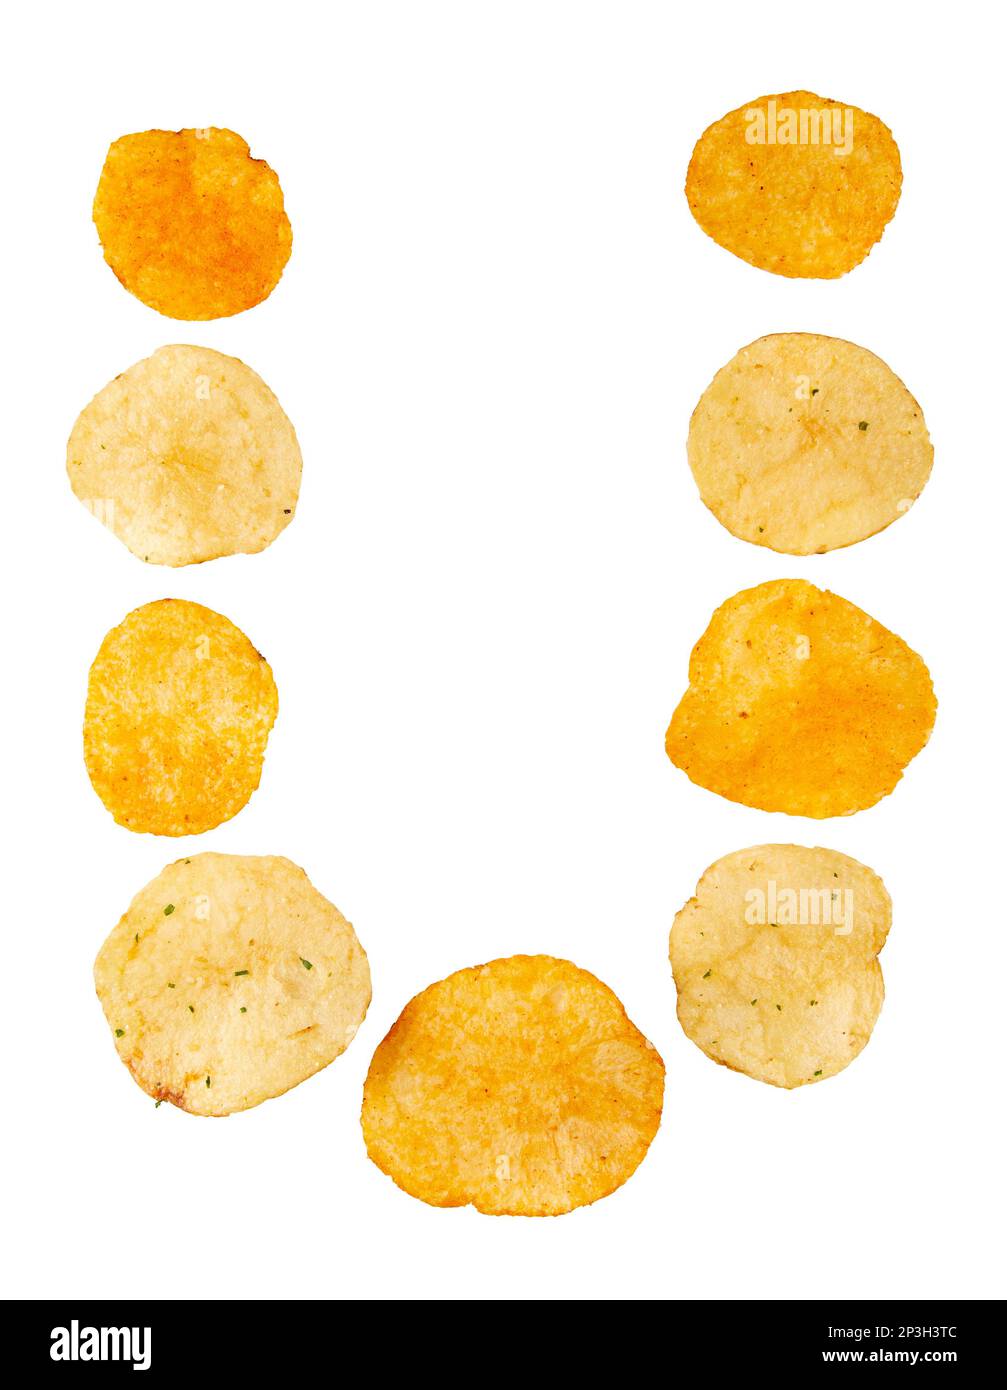 Lettre U faite de chips de pomme de terre et isolée sur fond blanc. Concept de l'alphabet alimentaire. Une lettre de l'ensemble de police de puce de pomme de terre facile à empiler. Banque D'Images